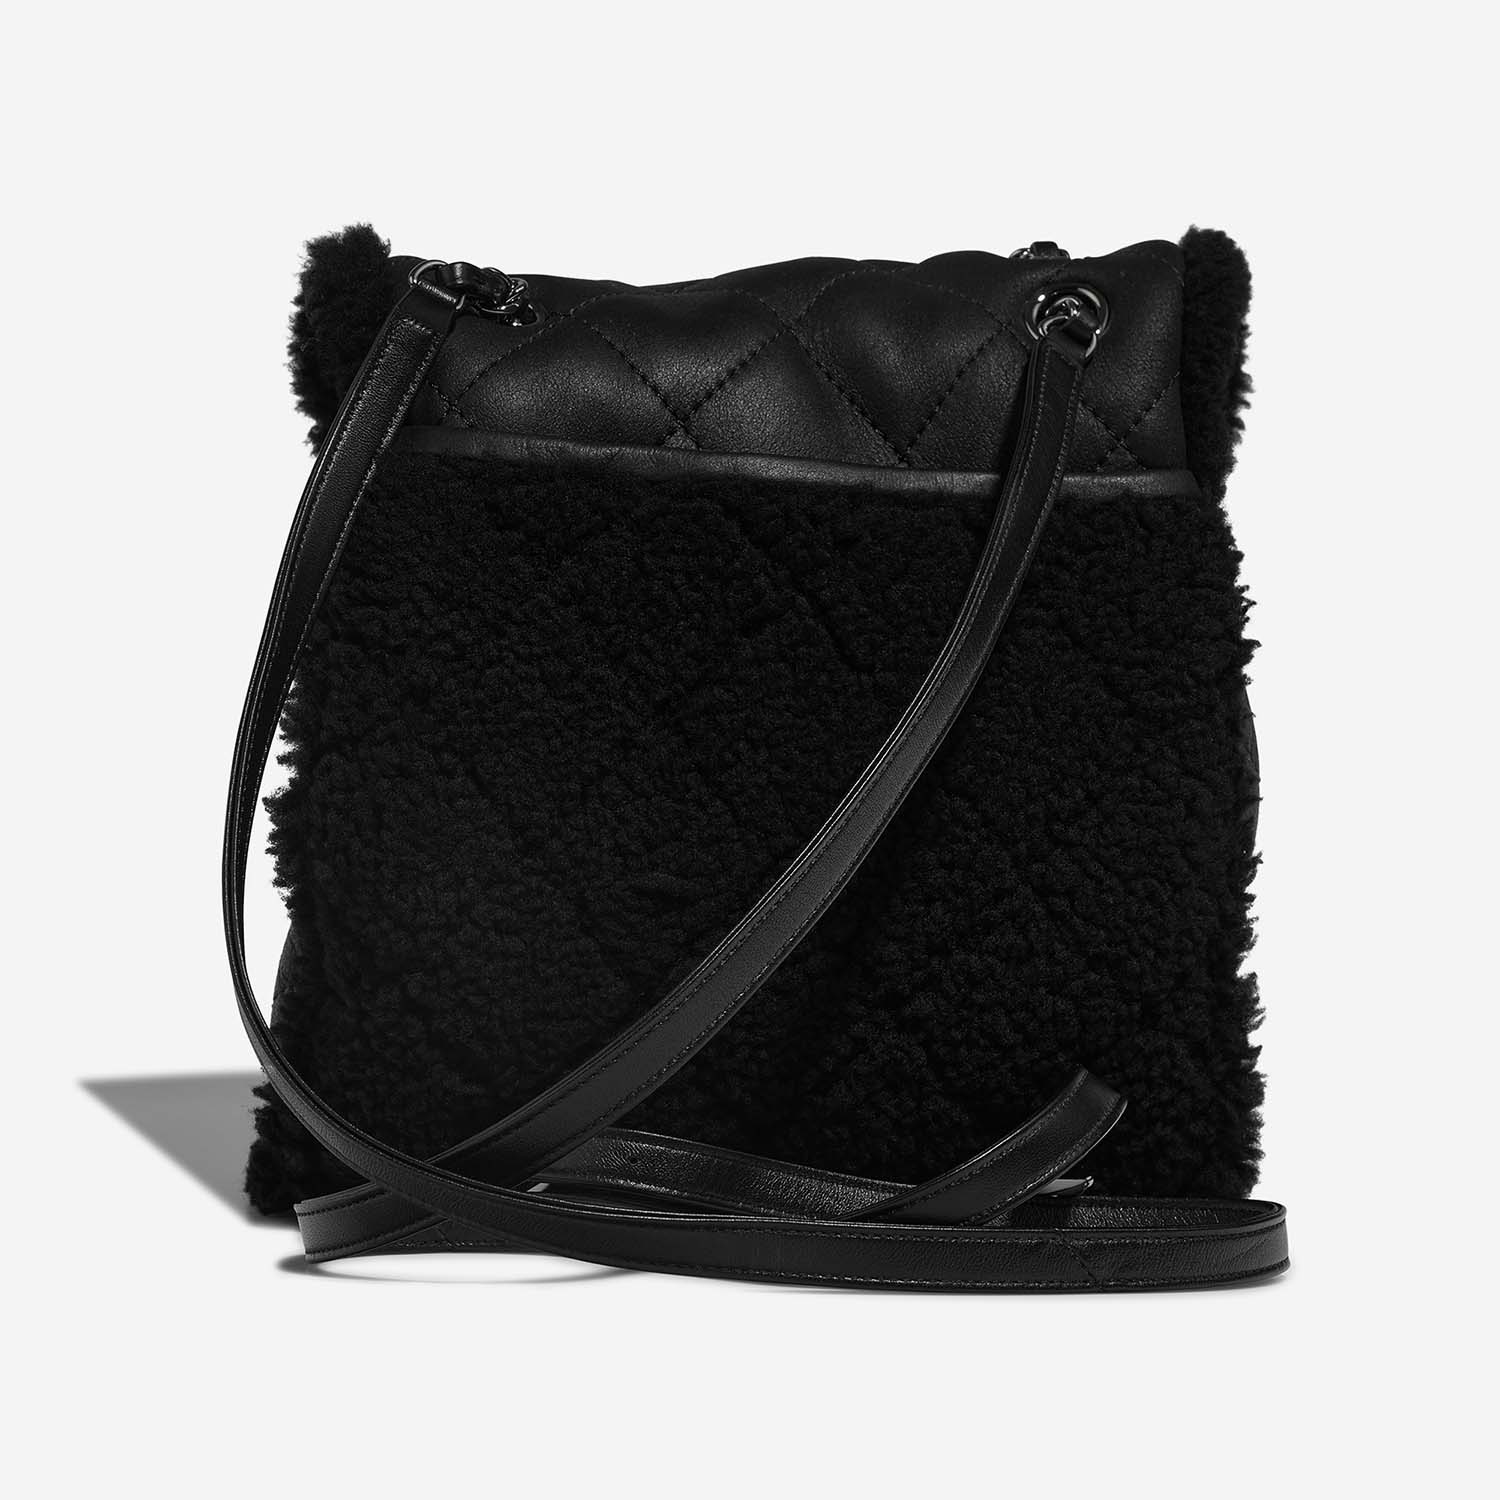 Chanel Backpack Black Back | Sell your designer bag on Saclab.com